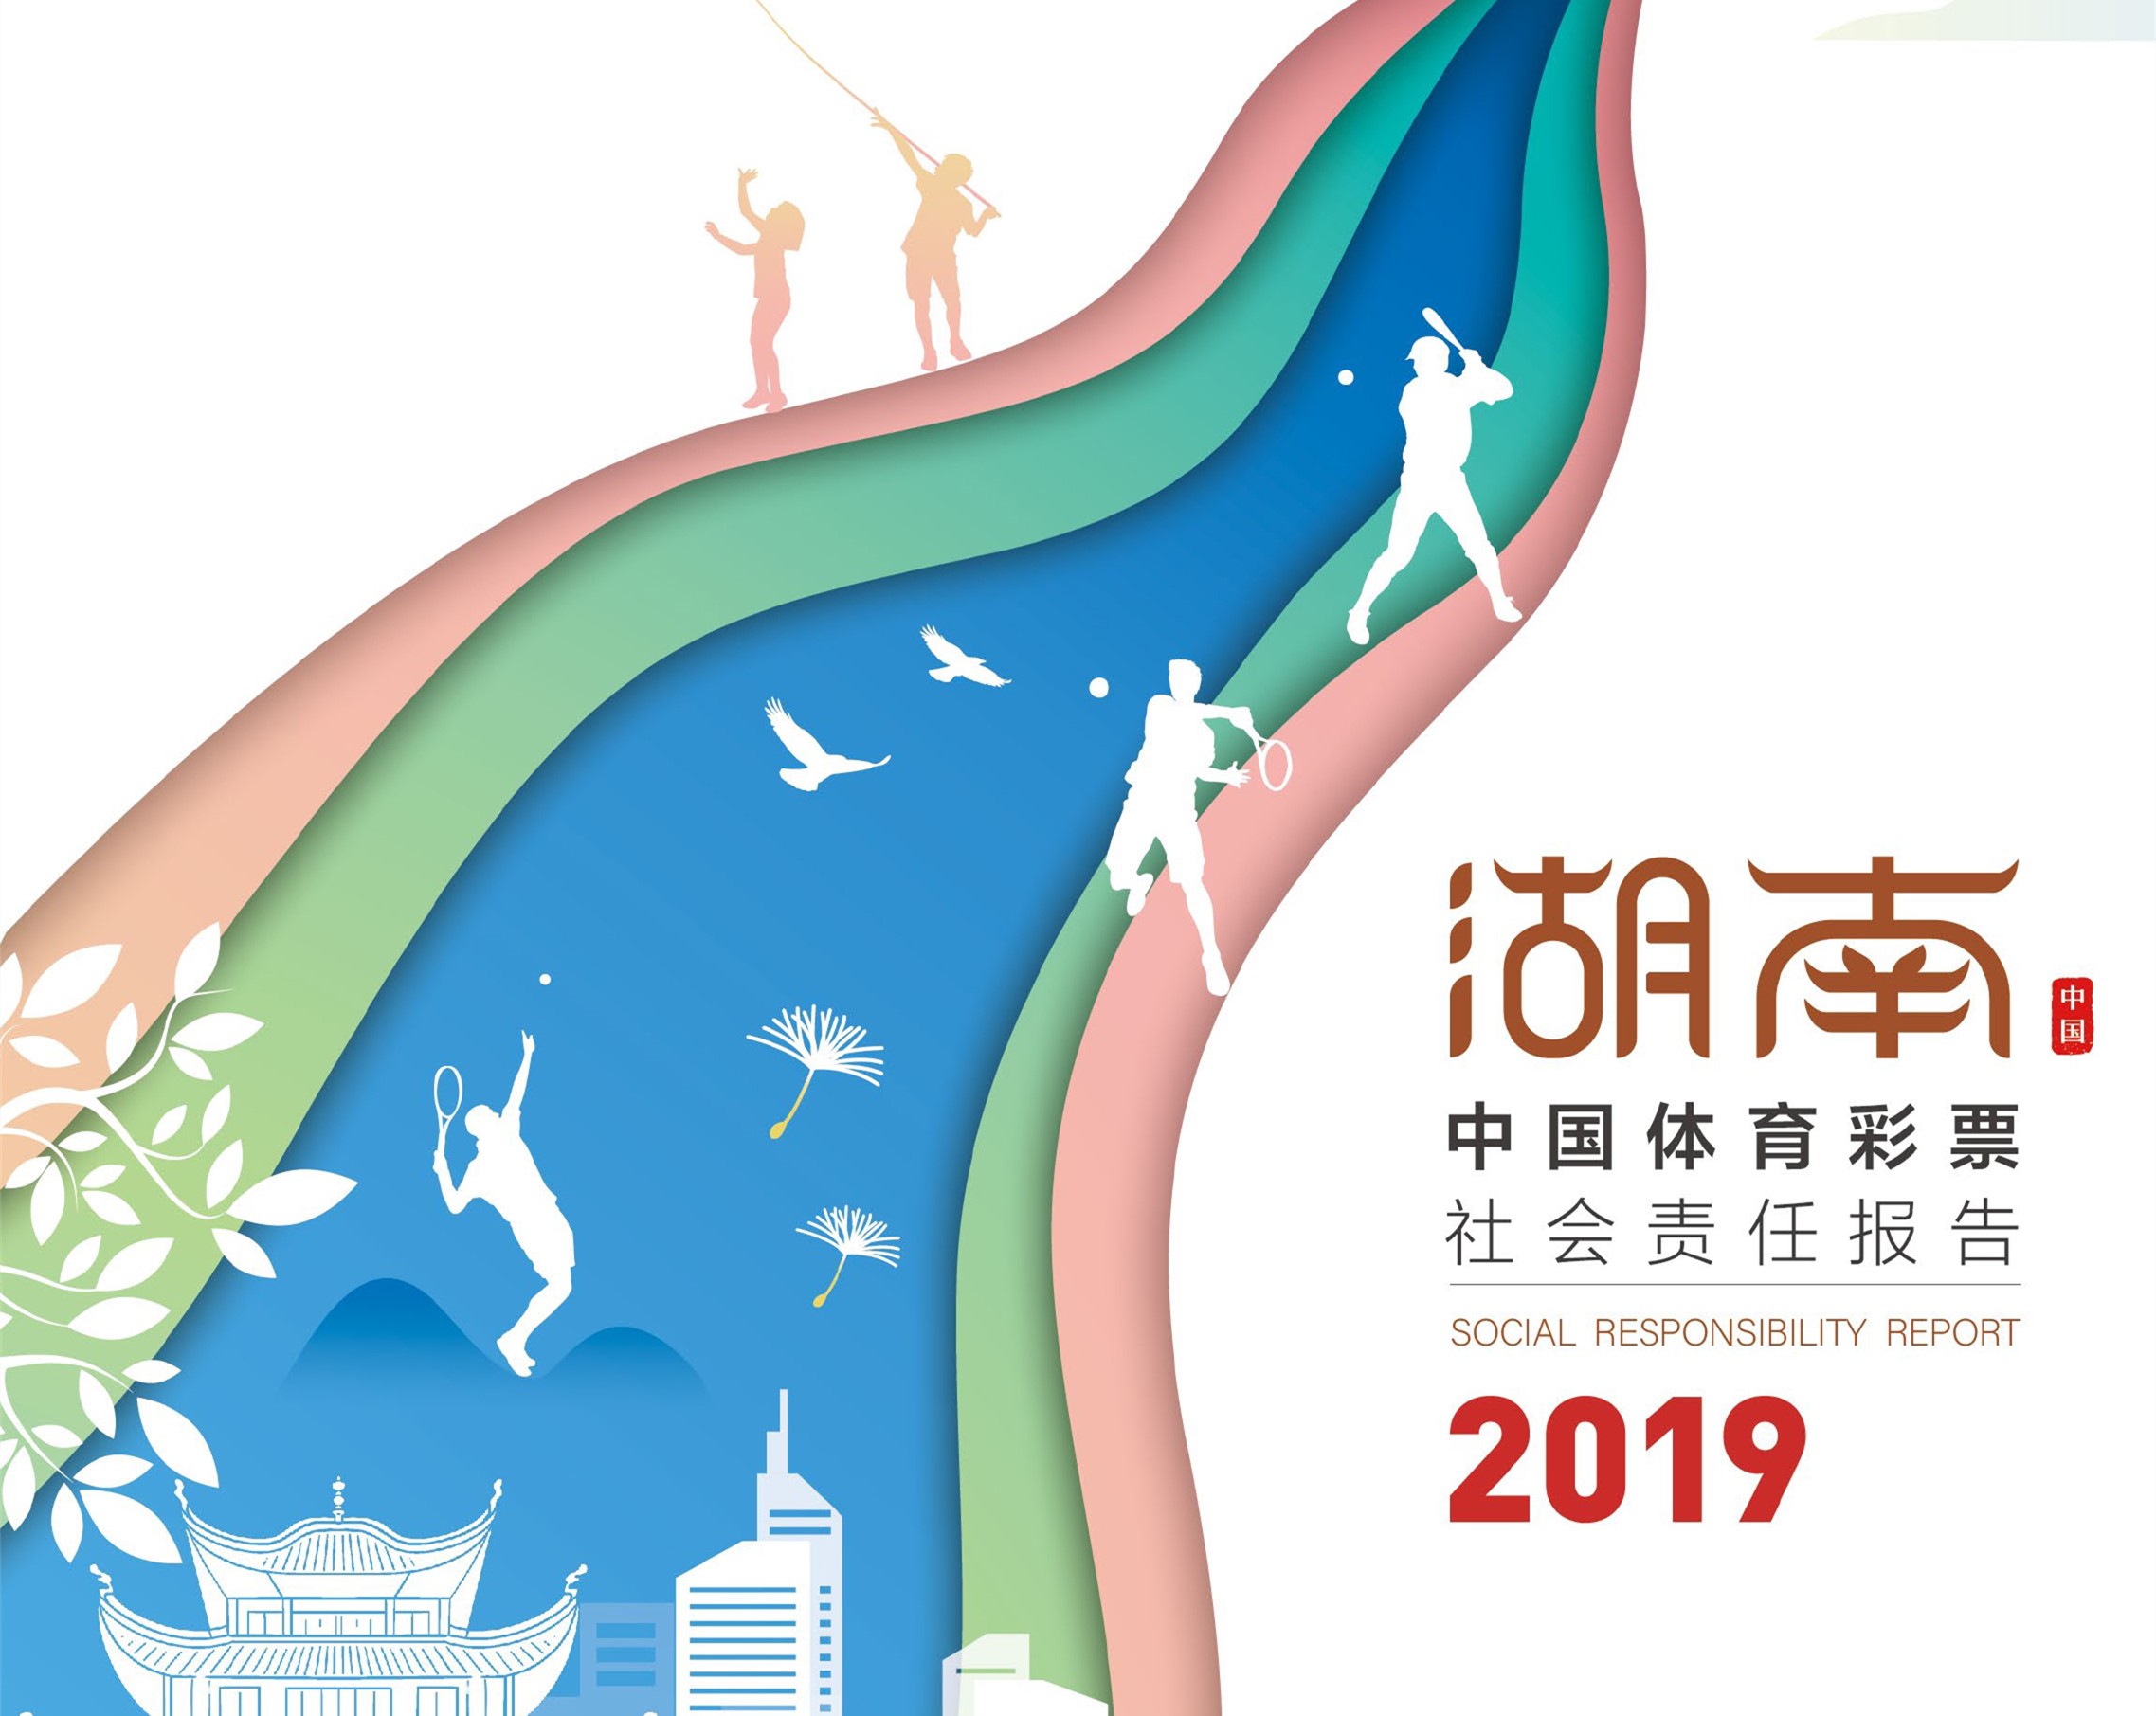 助力健康中国和体育强国建设  湖南体彩发布2019年社会责任报告